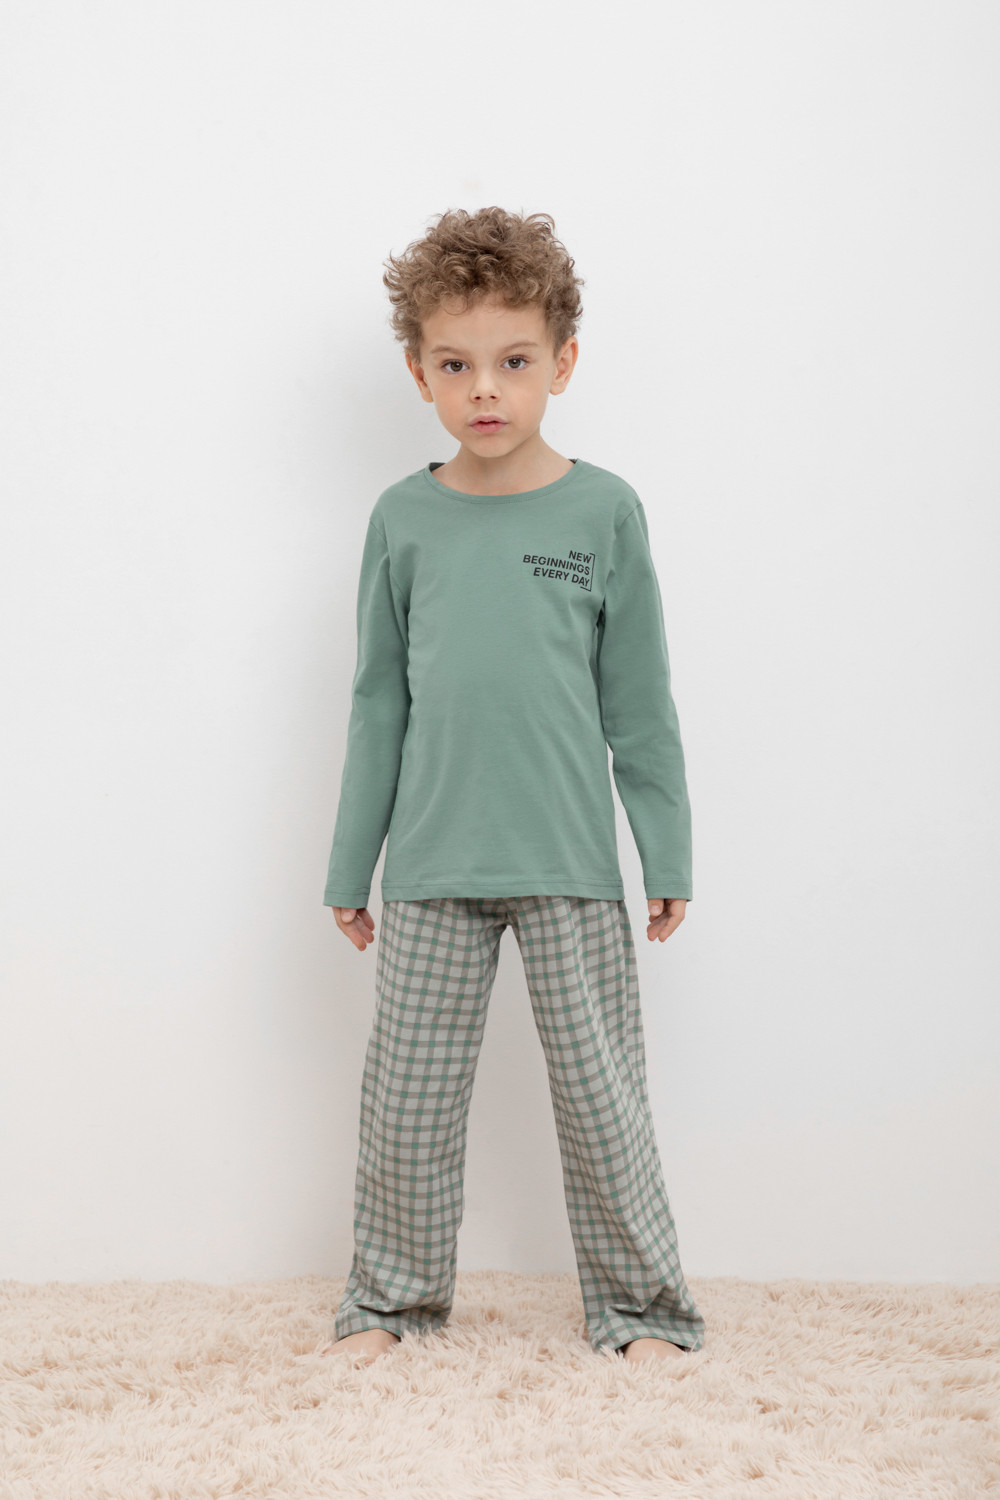 Пижама детская CROCKID М 1303-1, М 3702, весенний зеленый, бежевая клетка, 128 футболка для мальчиков бежевая с рисунком и текстом